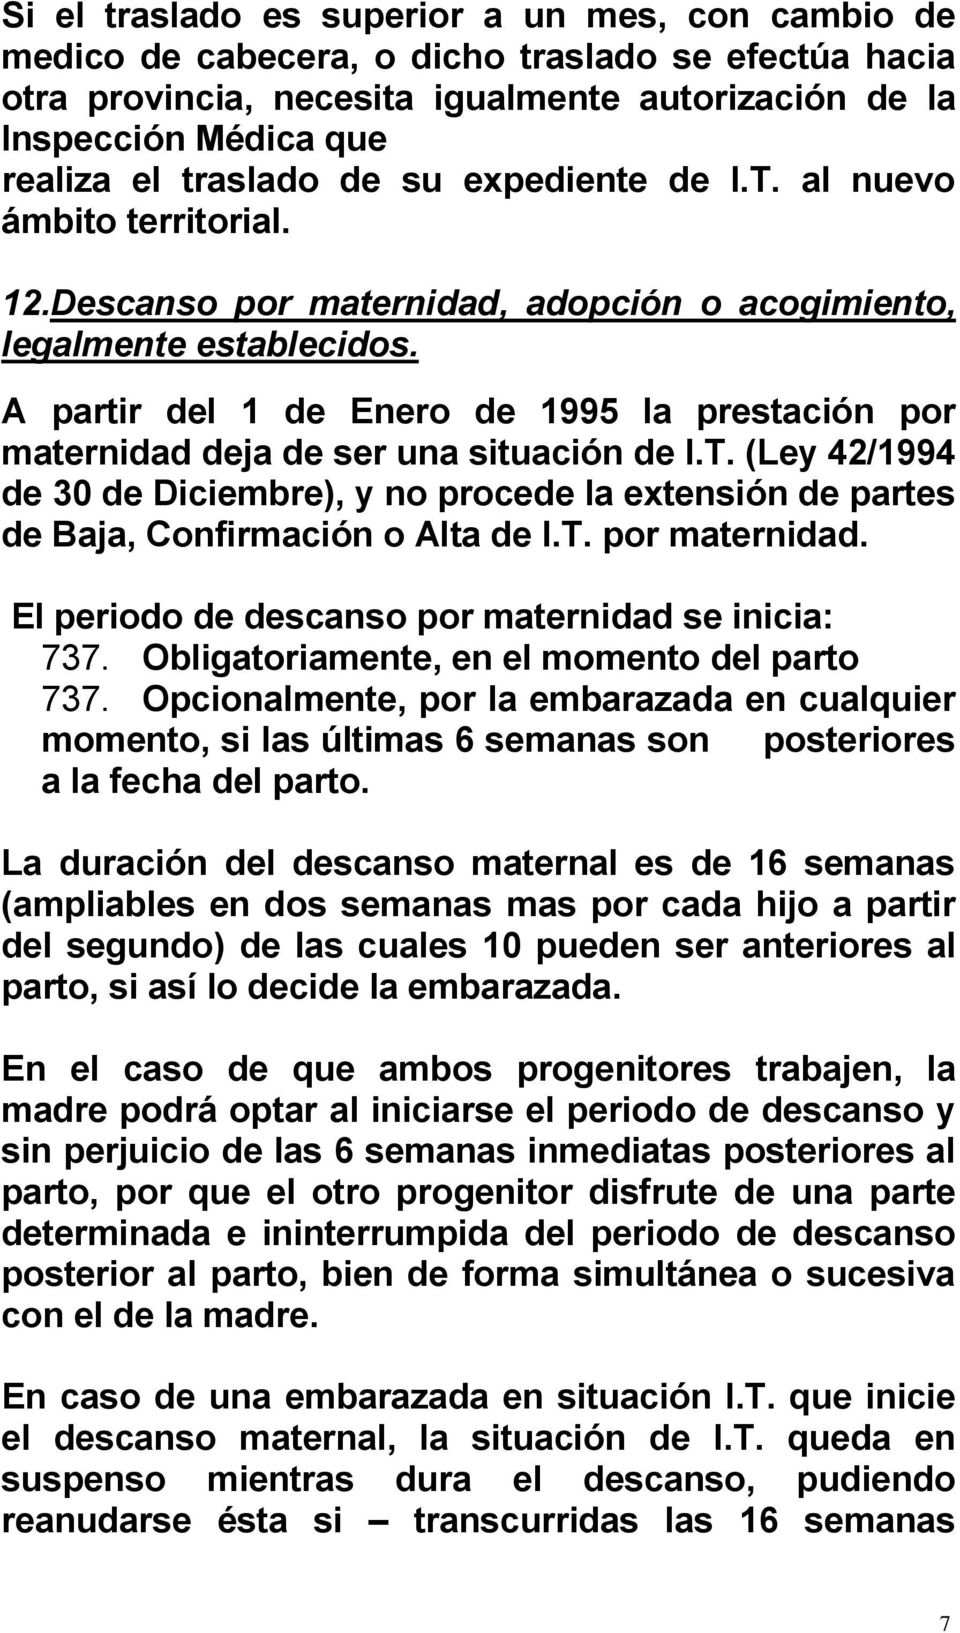 A partir del 1 de Enero de 1995 la prestación por maternidad deja de ser una situación de I.T. (Ley 42/1994 de 30 de Diciembre), y no procede la extensión de partes de Baja, Confirmación o Alta de I.